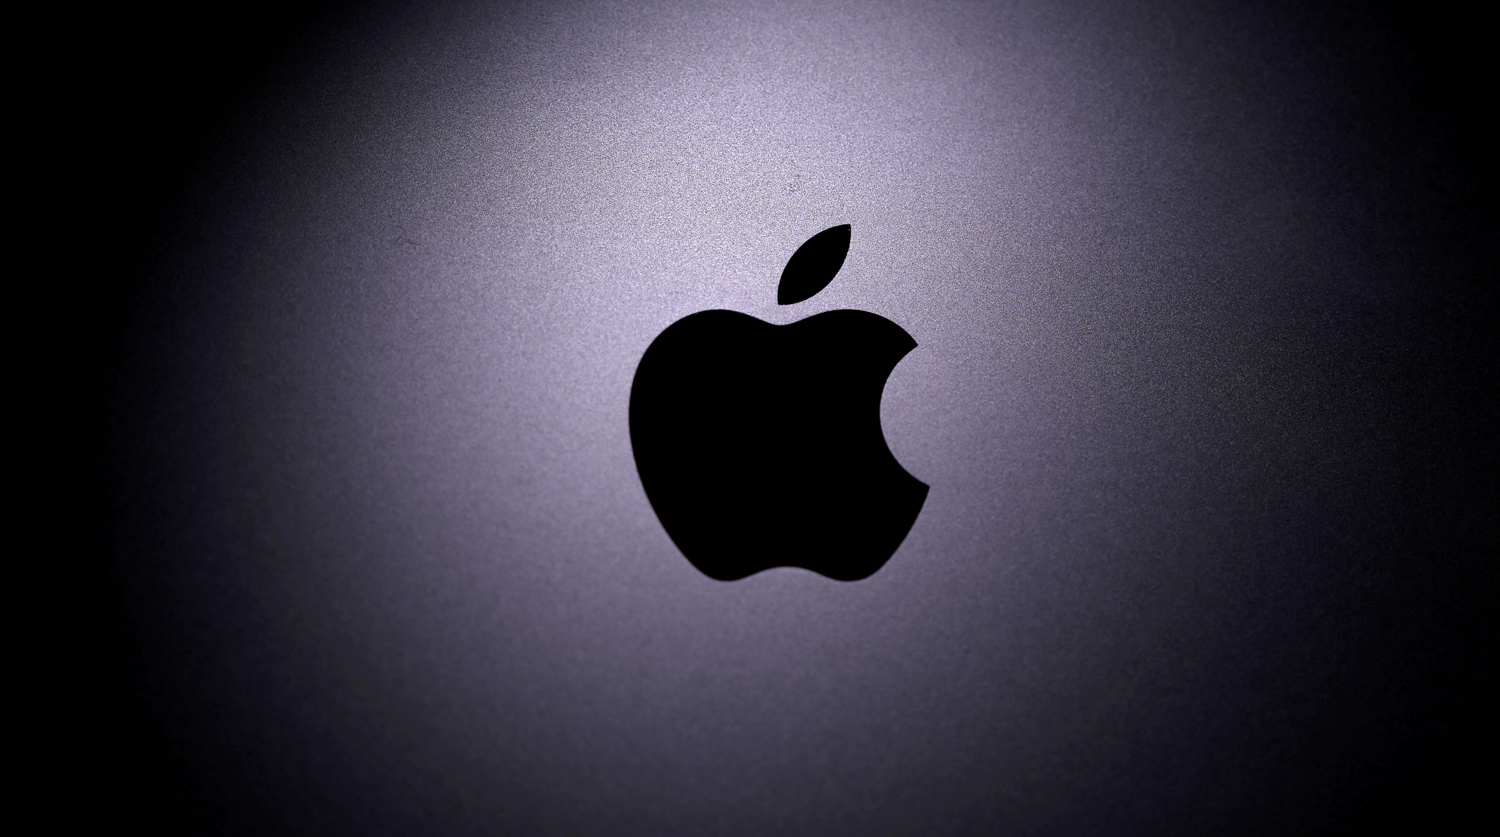 Apple udalit uchetnui zapisi razrabotchika igry Fortnite iz svoego magazina